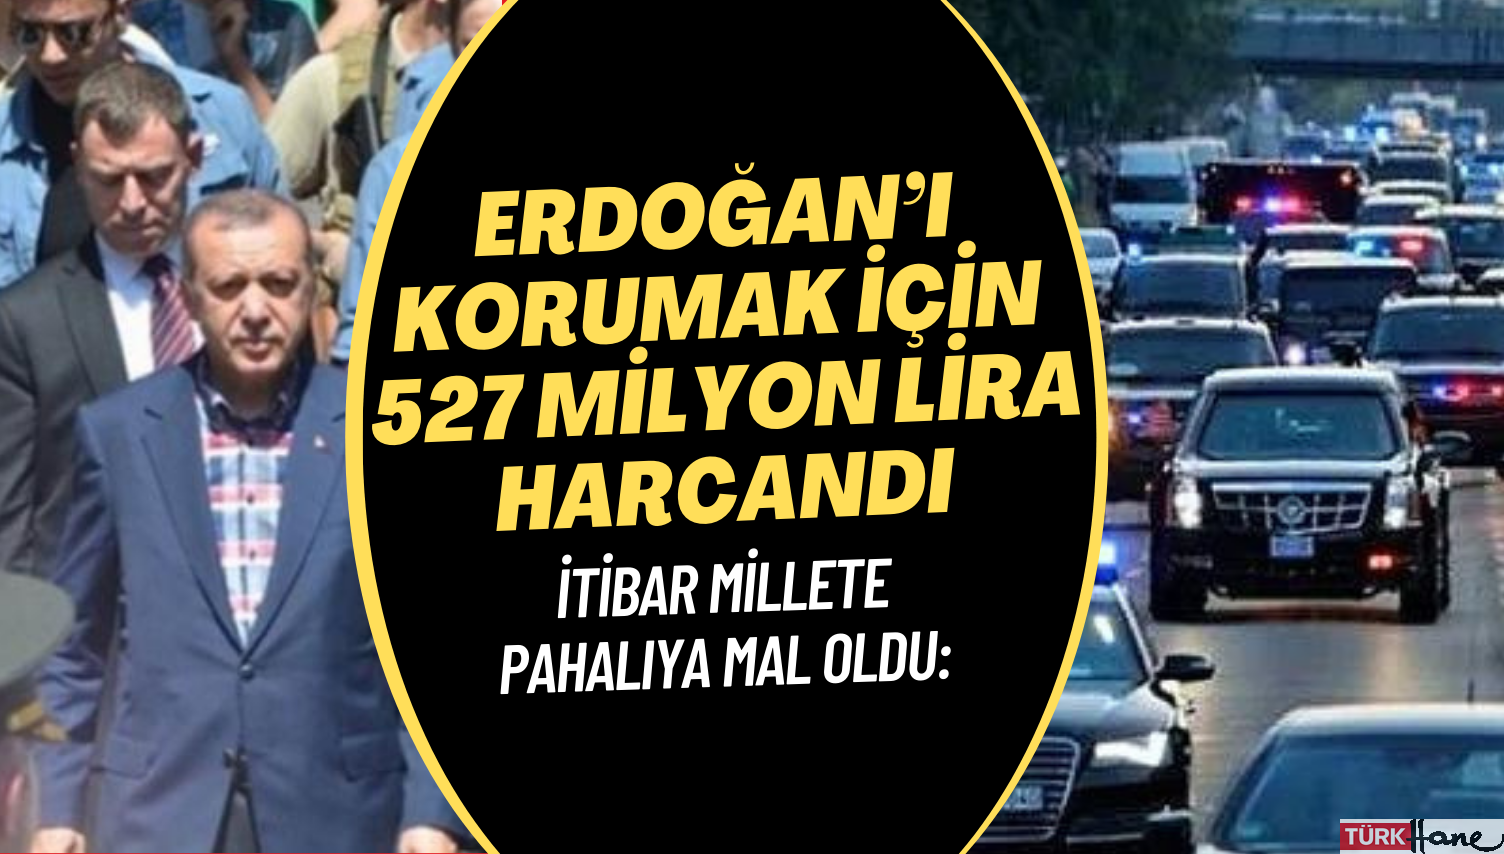 İtibar millete pahalıya mal oldu: Emniyet, Erdoğan’ı korumak için 527 milyon lira harcadı